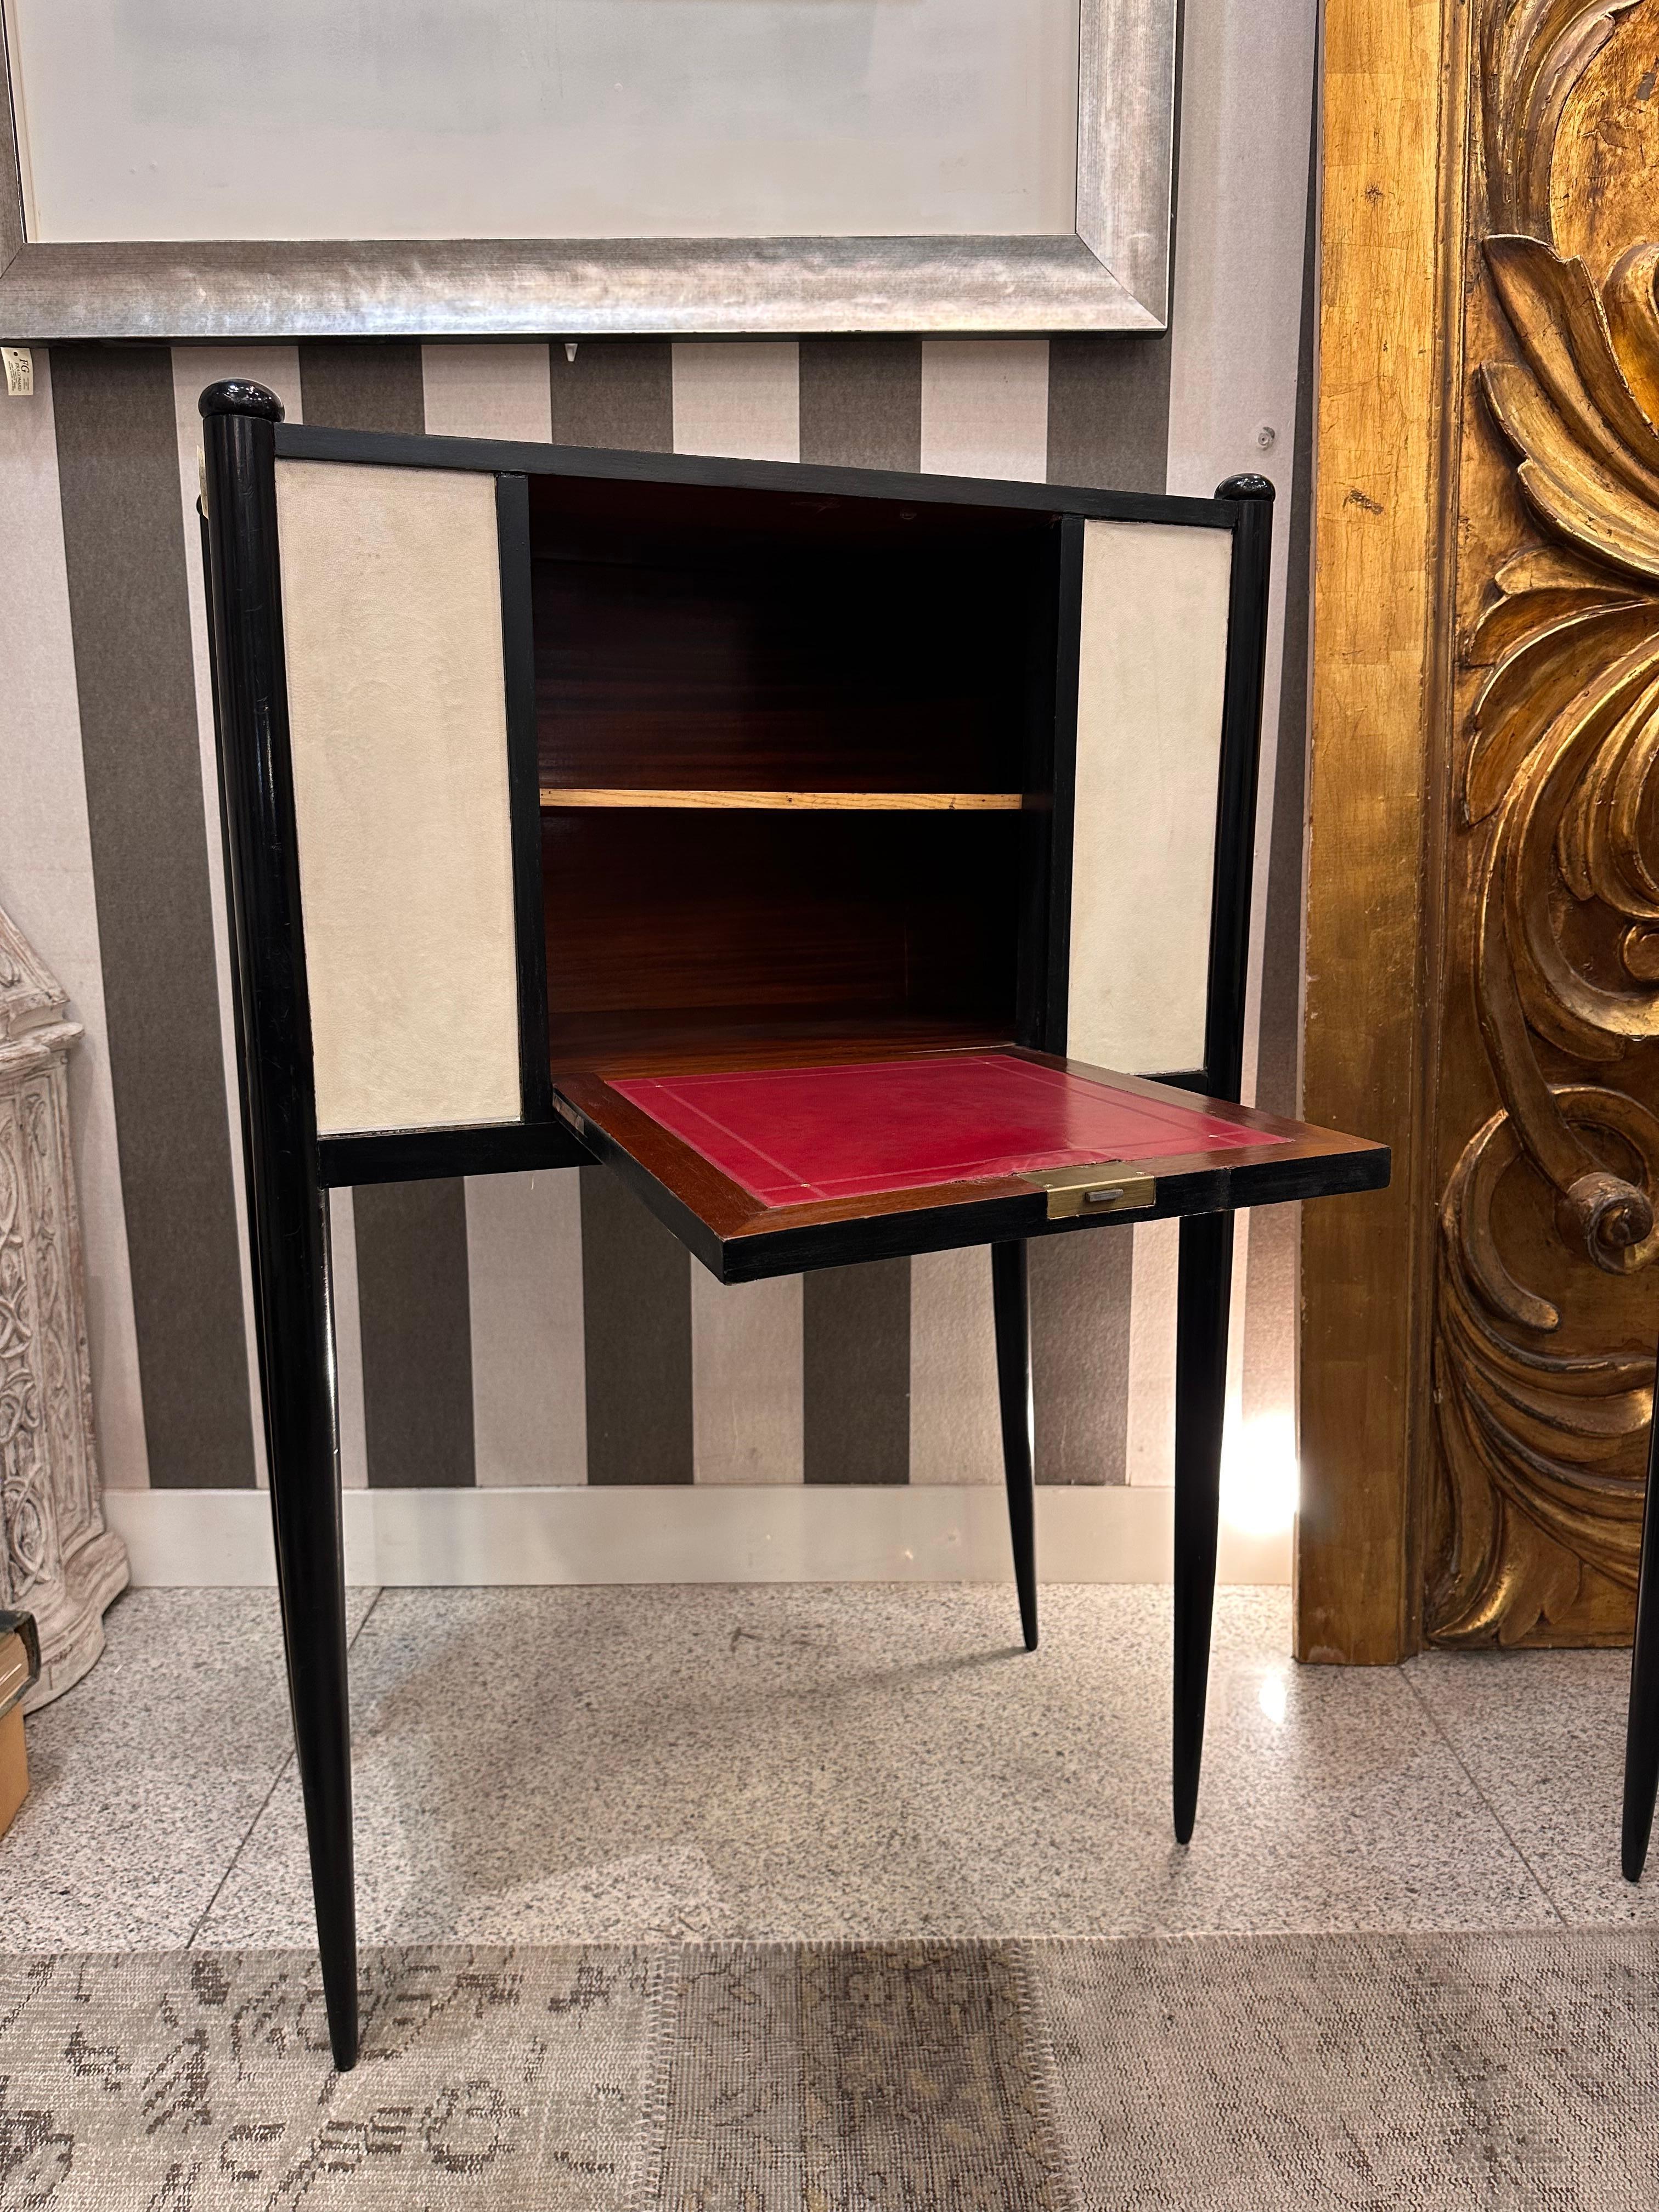  Paire d'un seul type  armoire-secrétaire en laque noire  bois et parchemin  attribuée à Paolo Buffa (Milan, Italie, 1903-1970).

Les meubles conçus par l'architecte et designer milanais Paolo Buffa sont souvent uniques, basés sur les besoins de ses